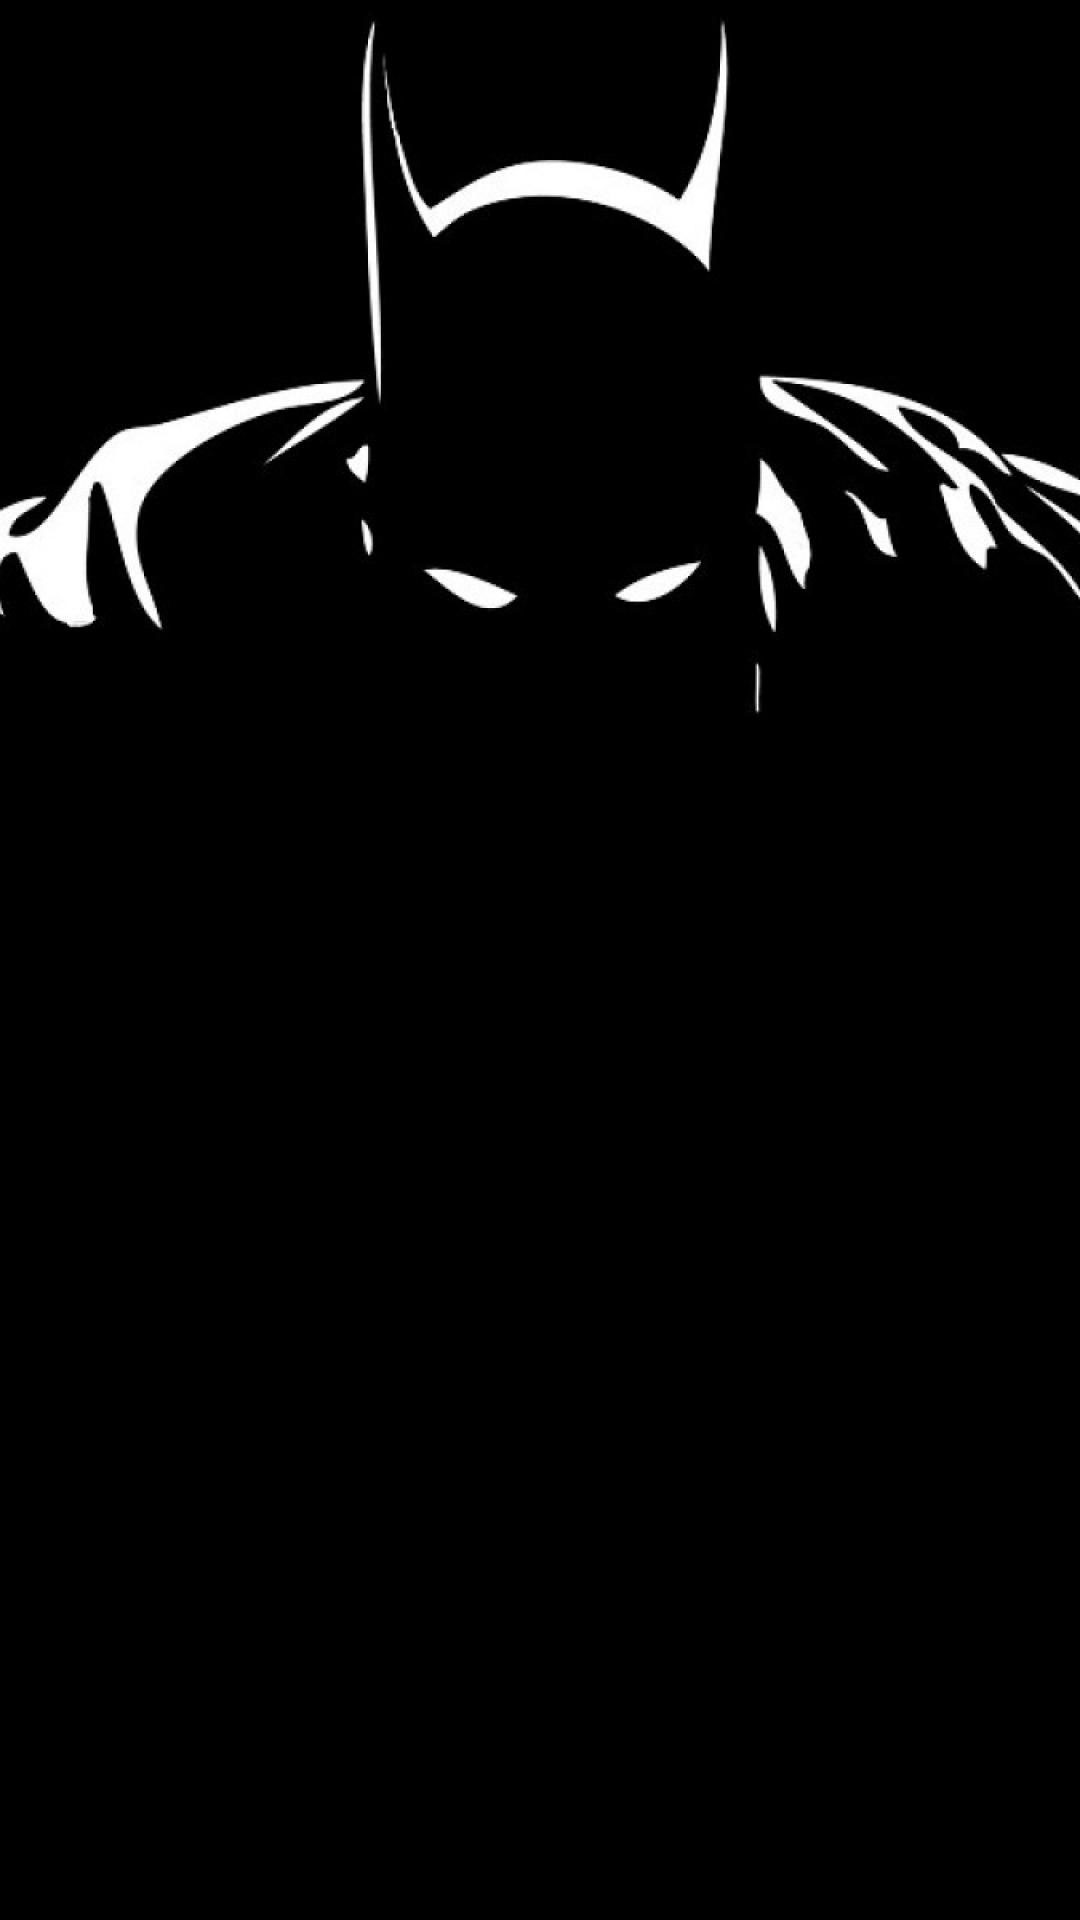 Hình nền Batman 4K: Một vị vua phục vụ công lý đến từ Gotham có thể củng cố sự vững chắc của màn hình của bạn với độ phân giải 4K. Tận hưởng sự mạnh mẽ của Batman với hình nền rực rỡ.